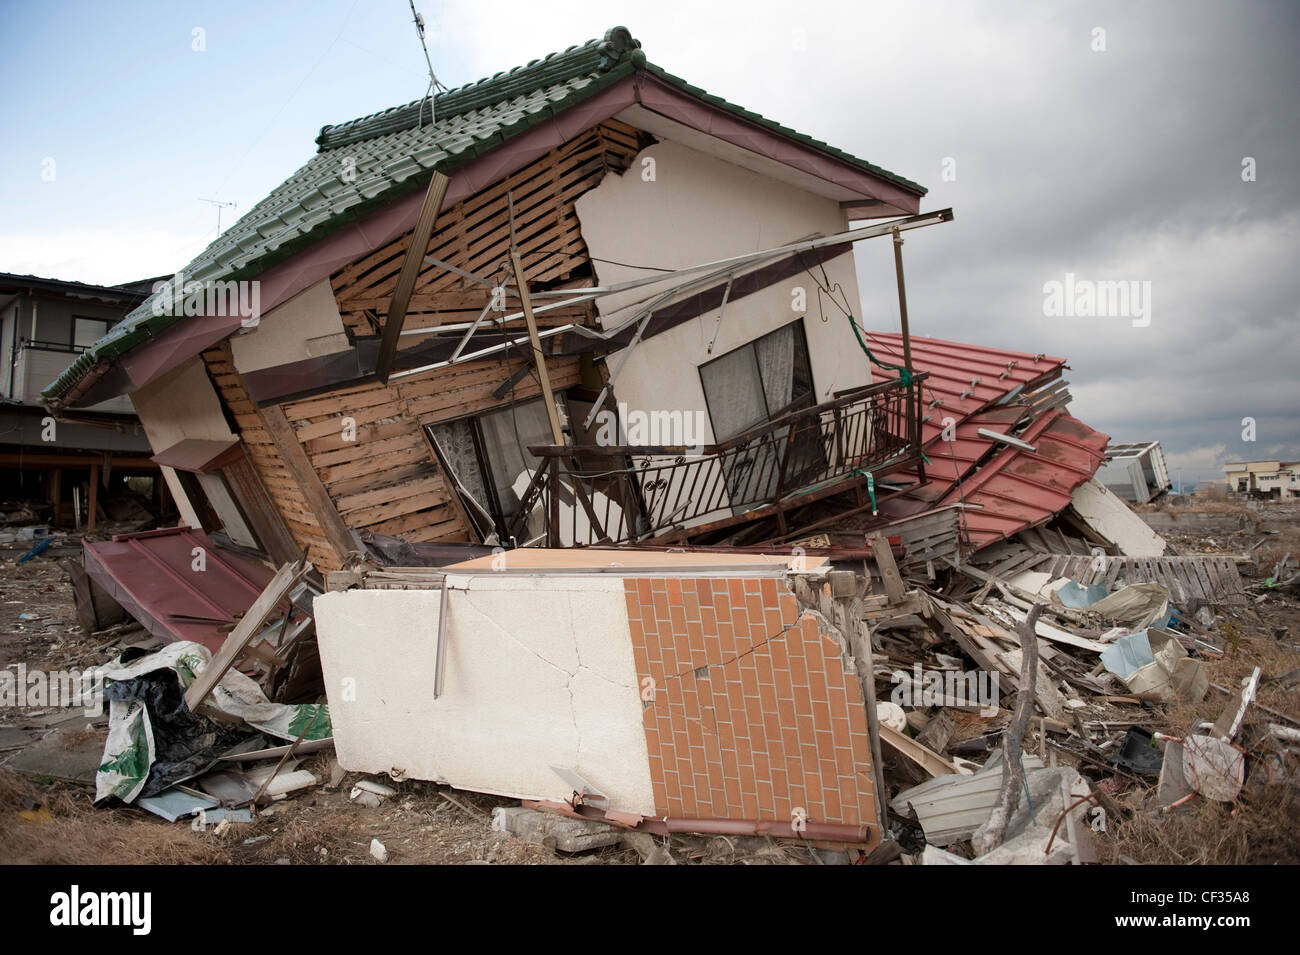 1° anniversario della giapponese tsunami approcci, tsunami i danni nella regione mayagi - ishinomaki town & Sendai. Foto Stock